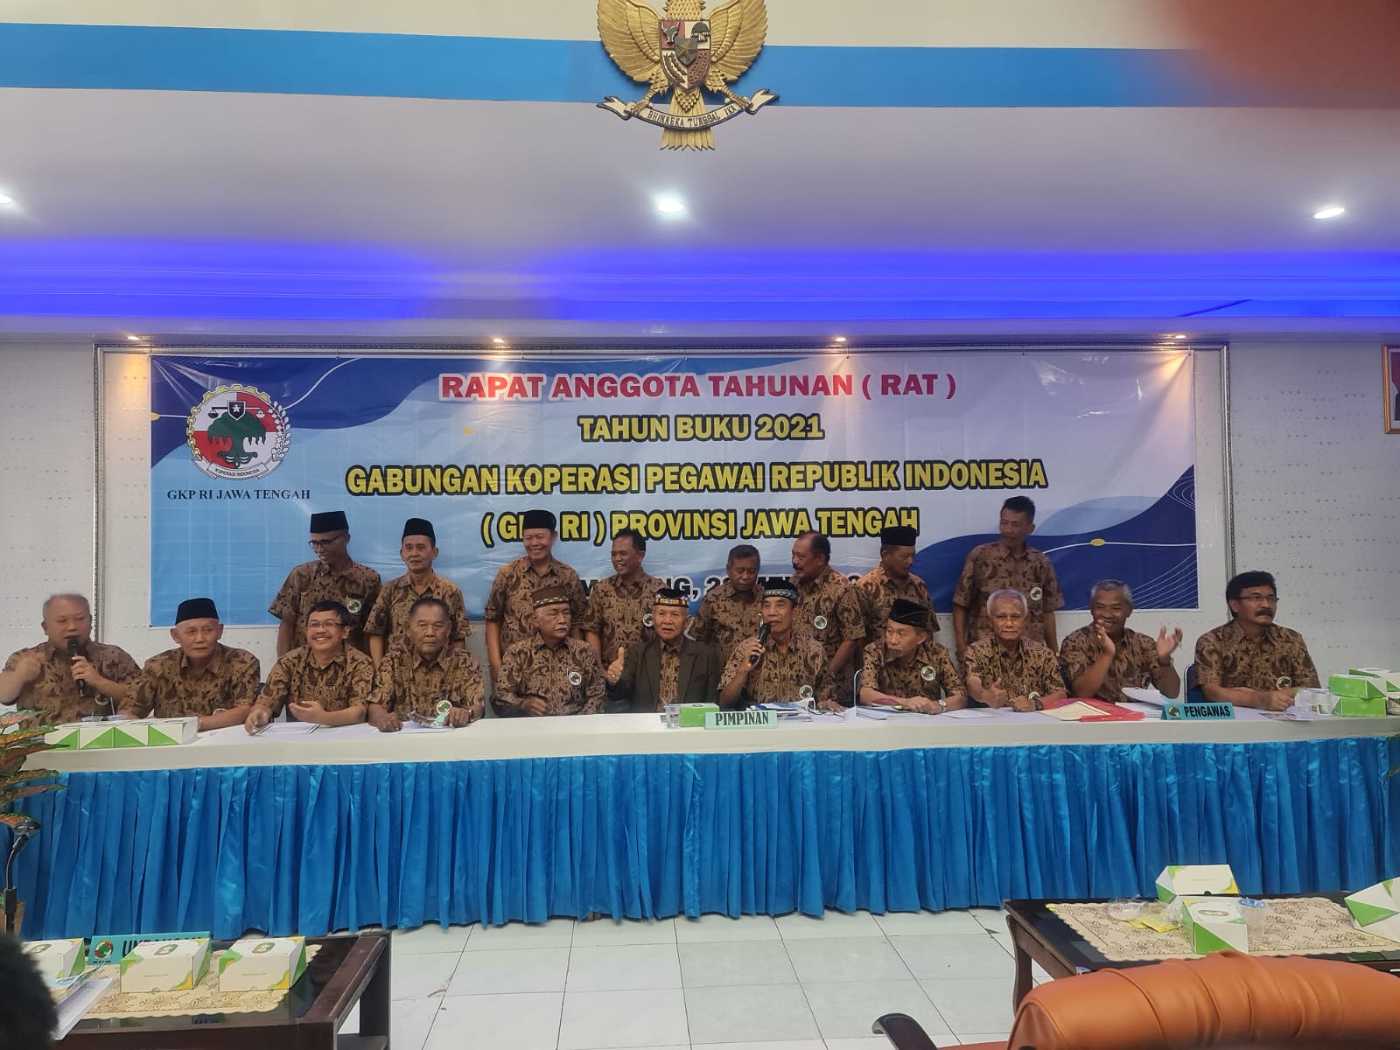 Bambang Suhardijo Kembali Pimpin GKPRI Jateng